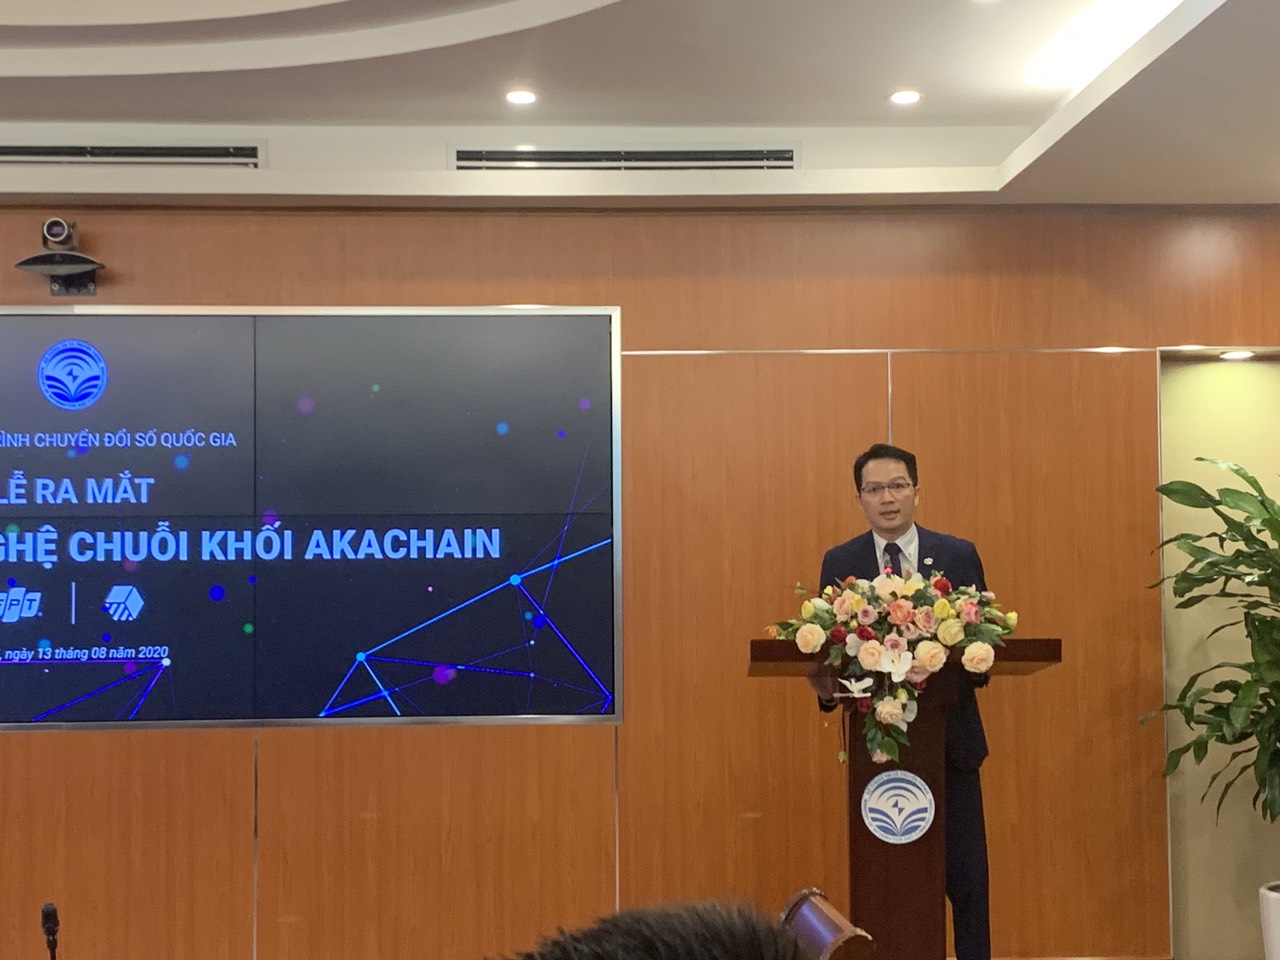 Ông Trần Đăng Hòa - Giám đốc điều hành của Công ty cổ phần FPT, đơn vị triển khai xây dựng akaChain. Ảnh: BN